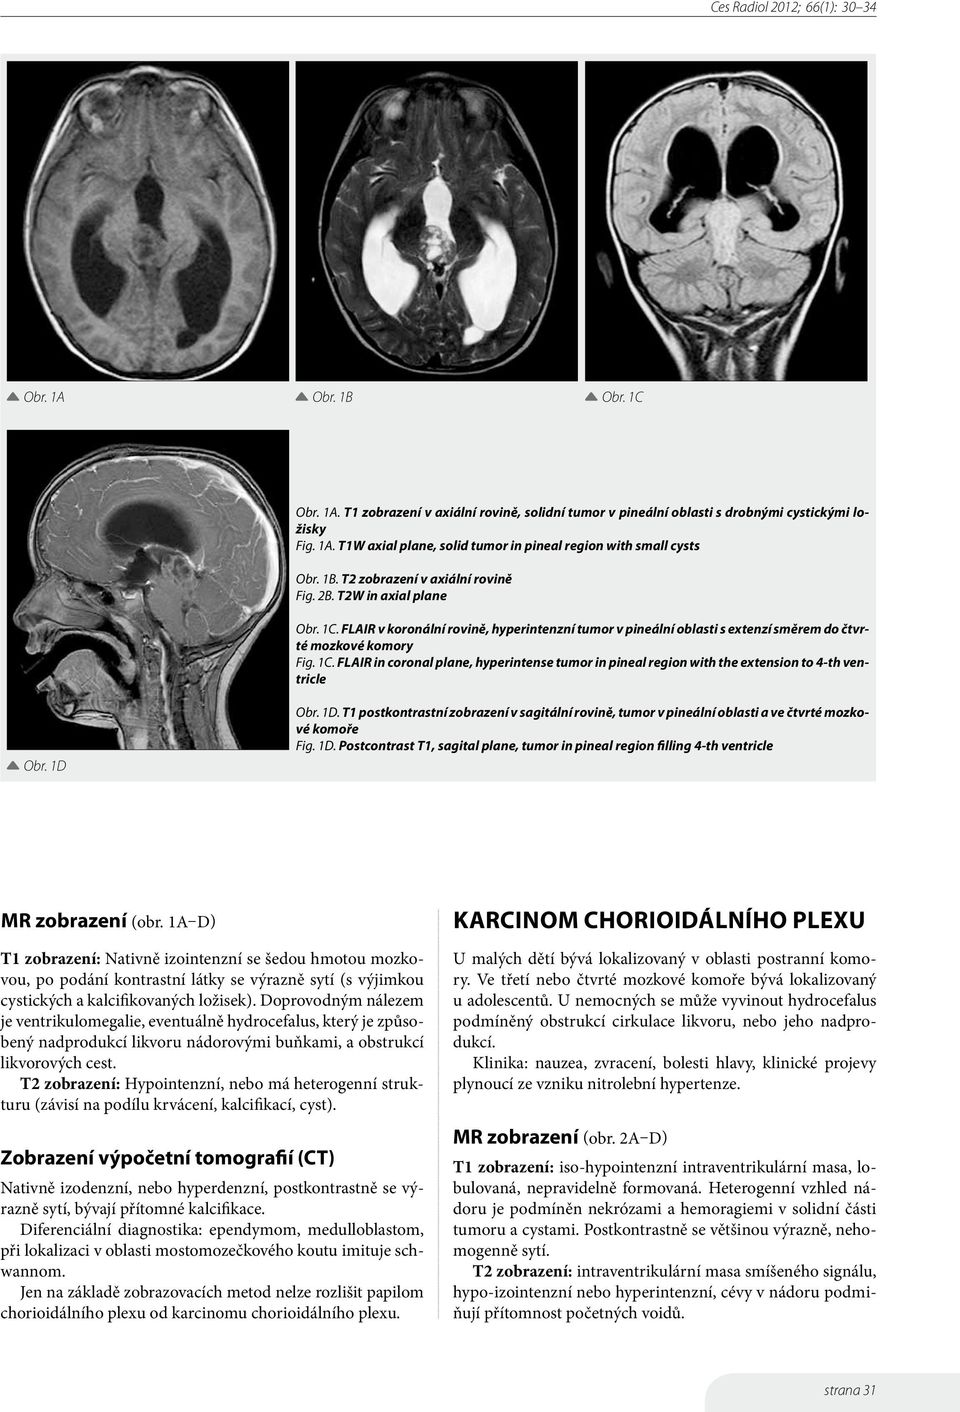 1D Obr. 1D. T1 postkontrastní zobrazení v sagitální rovině, tumor v pineální oblasti a ve čtvrté mozkové komoře Fig. 1D. Postcontrast T1, sagital plane, tumor in pineal region filling 4-th ventricle MR zobrazení (obr.